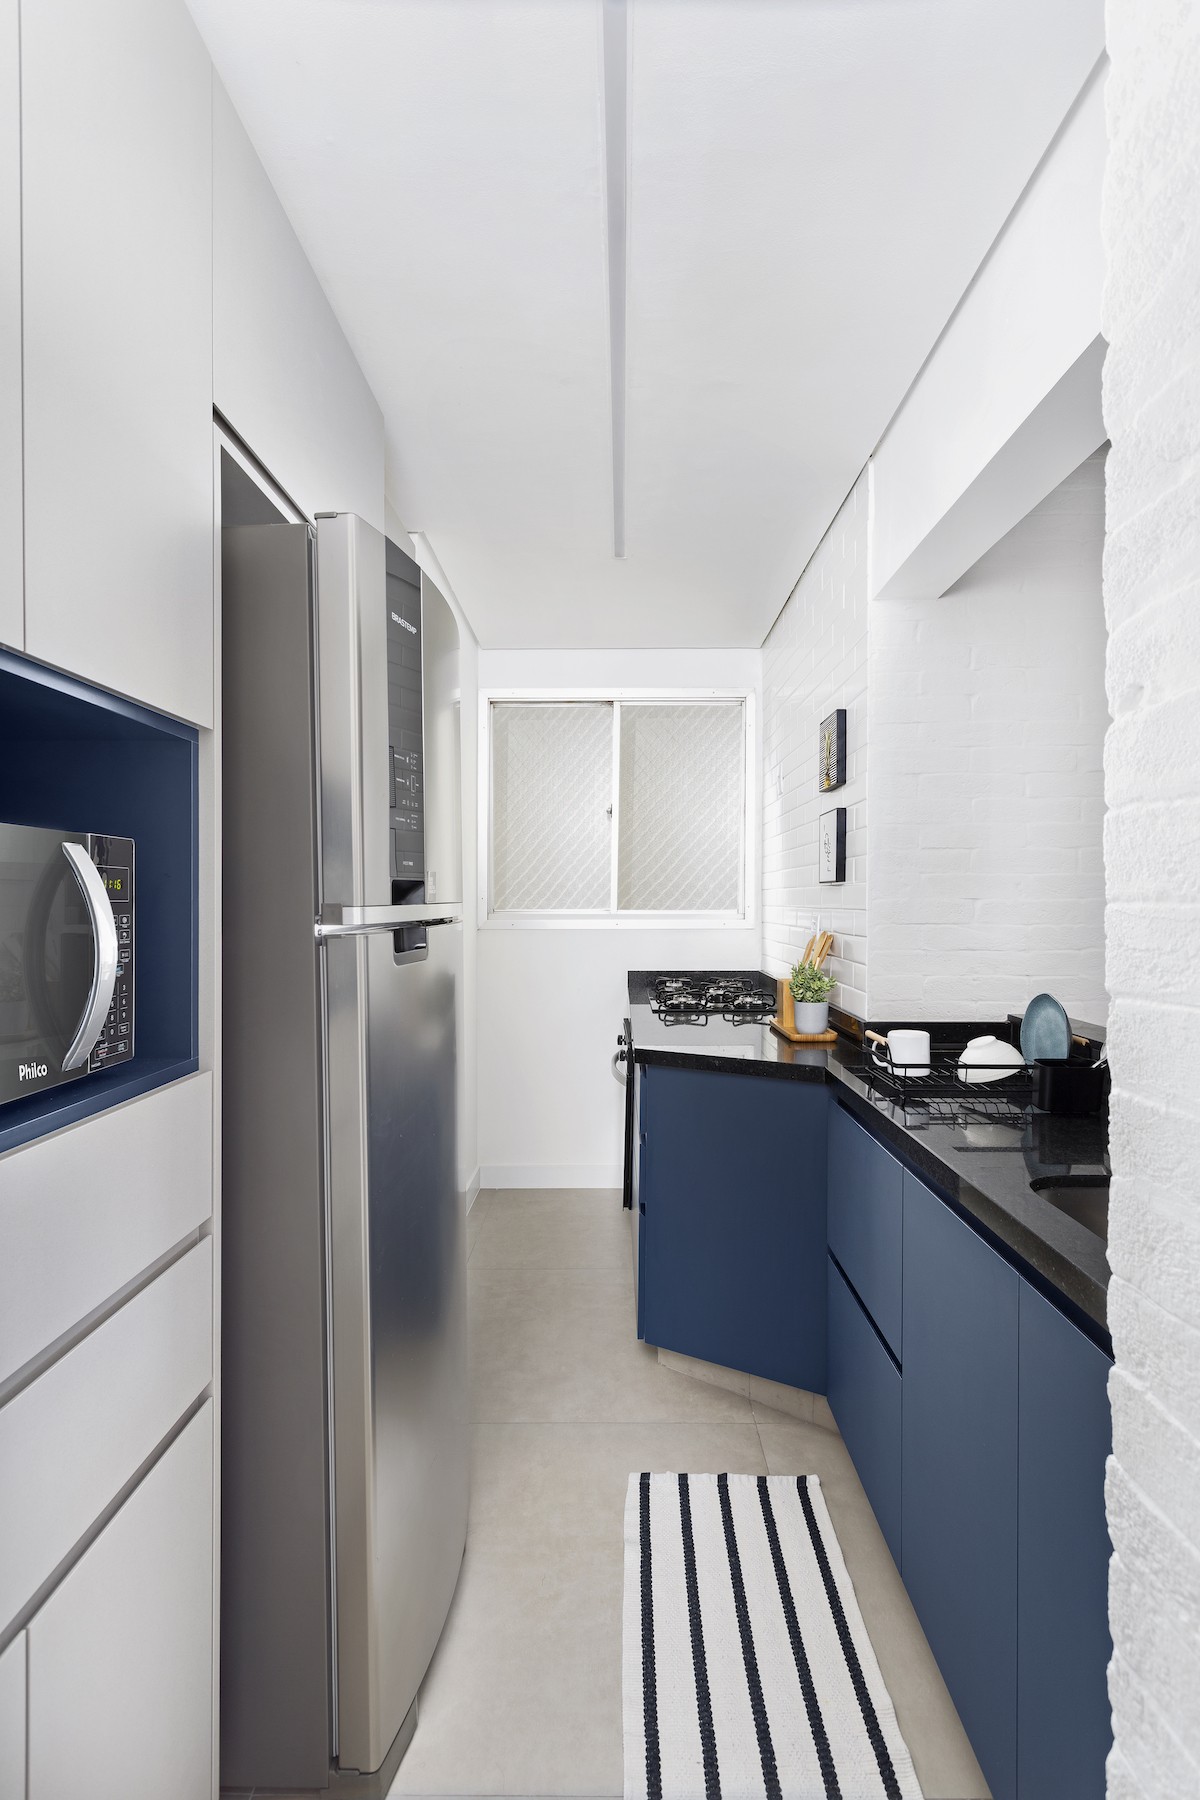 COZINHA | Também em formato de corredor, a cozinha ganhou soluções de armazenamento extra com os armários dispostos nela  (Foto: Divulgação / Julia Ribeiro)